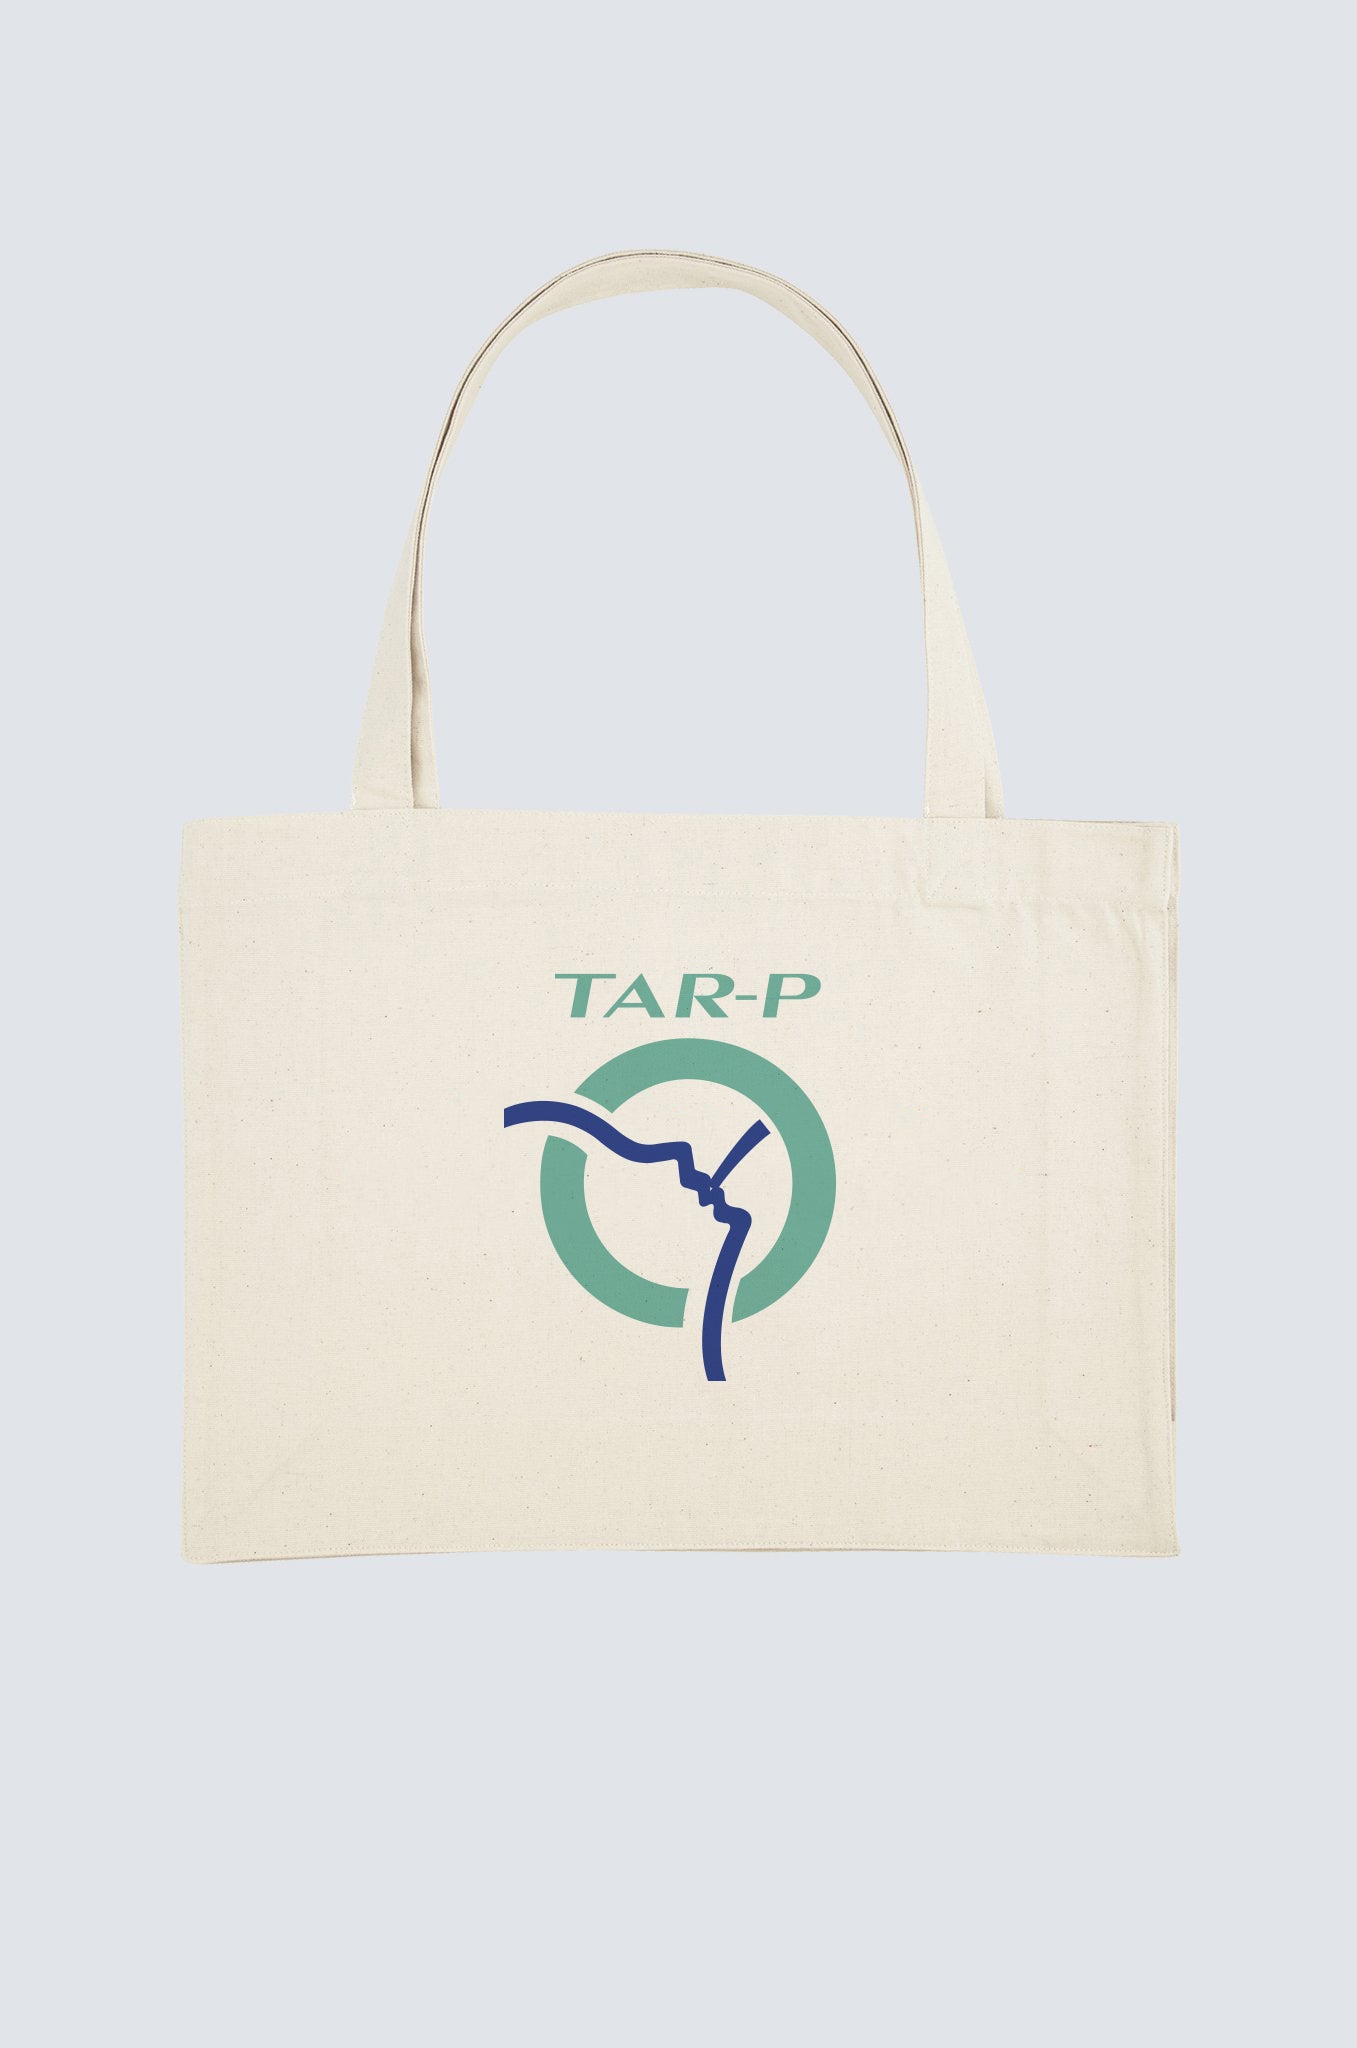 Tar-P